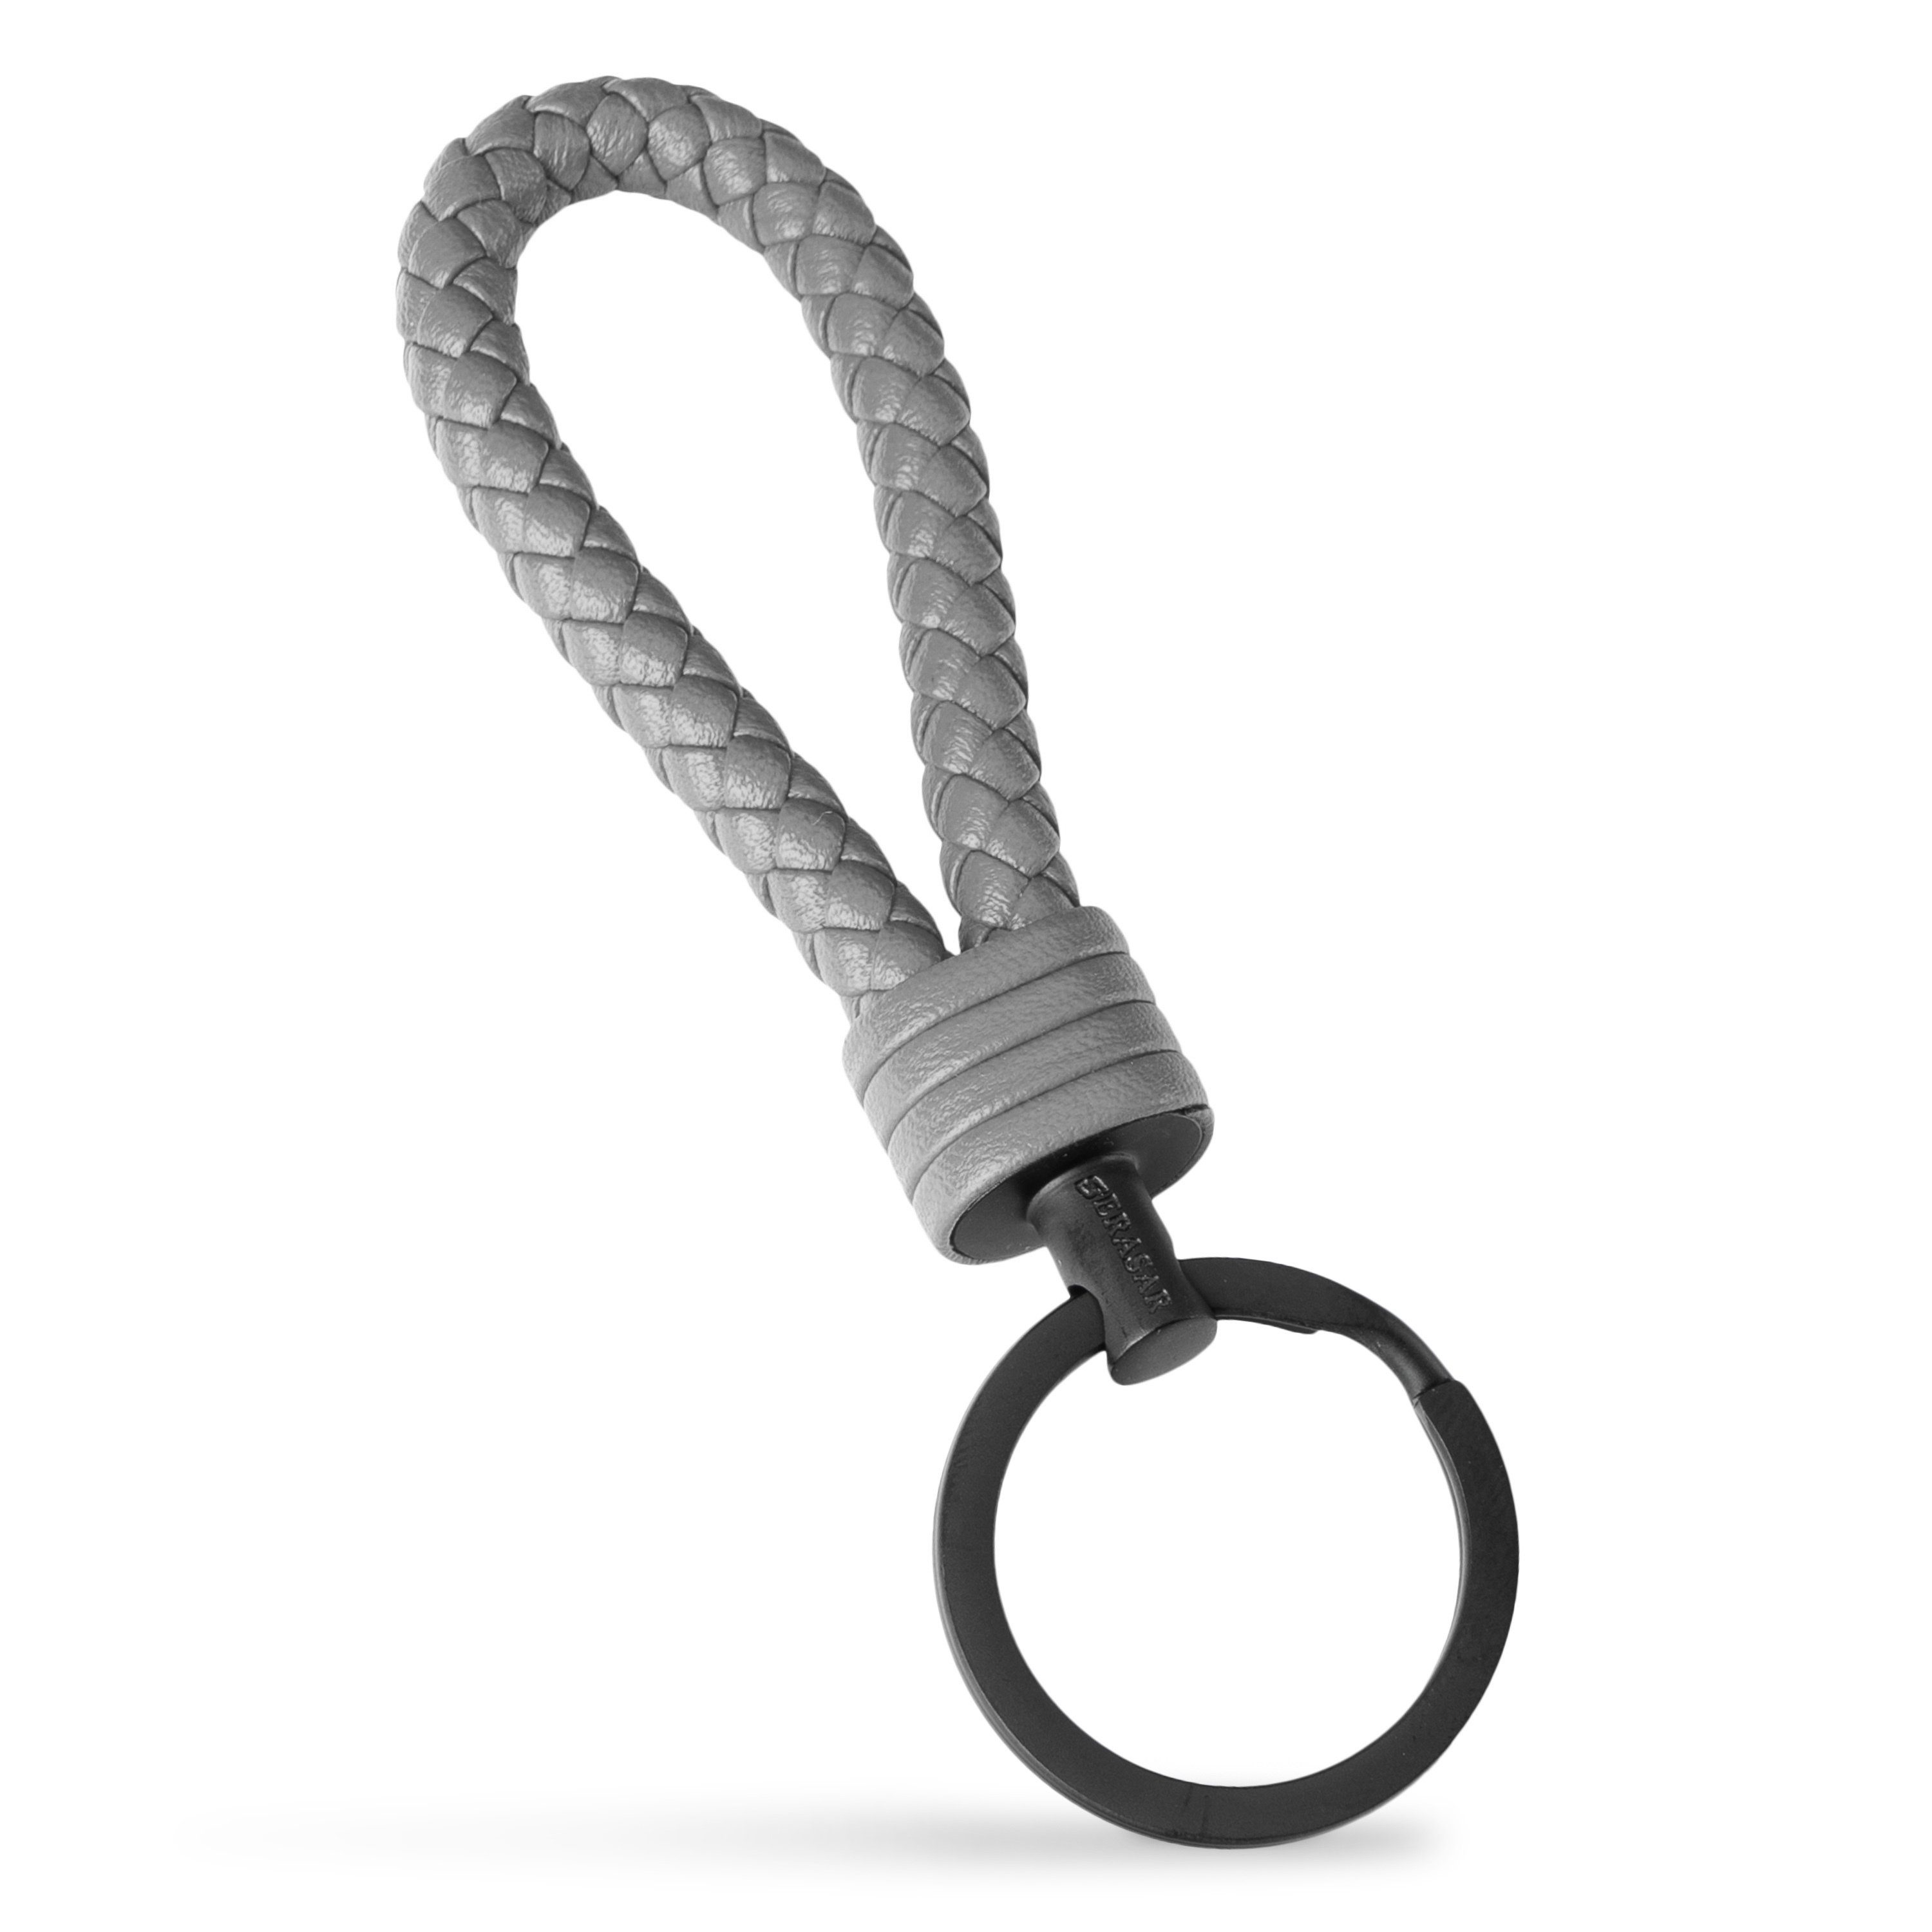 SERASAR Schlüsselanhänger Leder Schlüsselanhänger "Strong" (1-tlg), kleine für Zusatzringe Schlüssel Grau